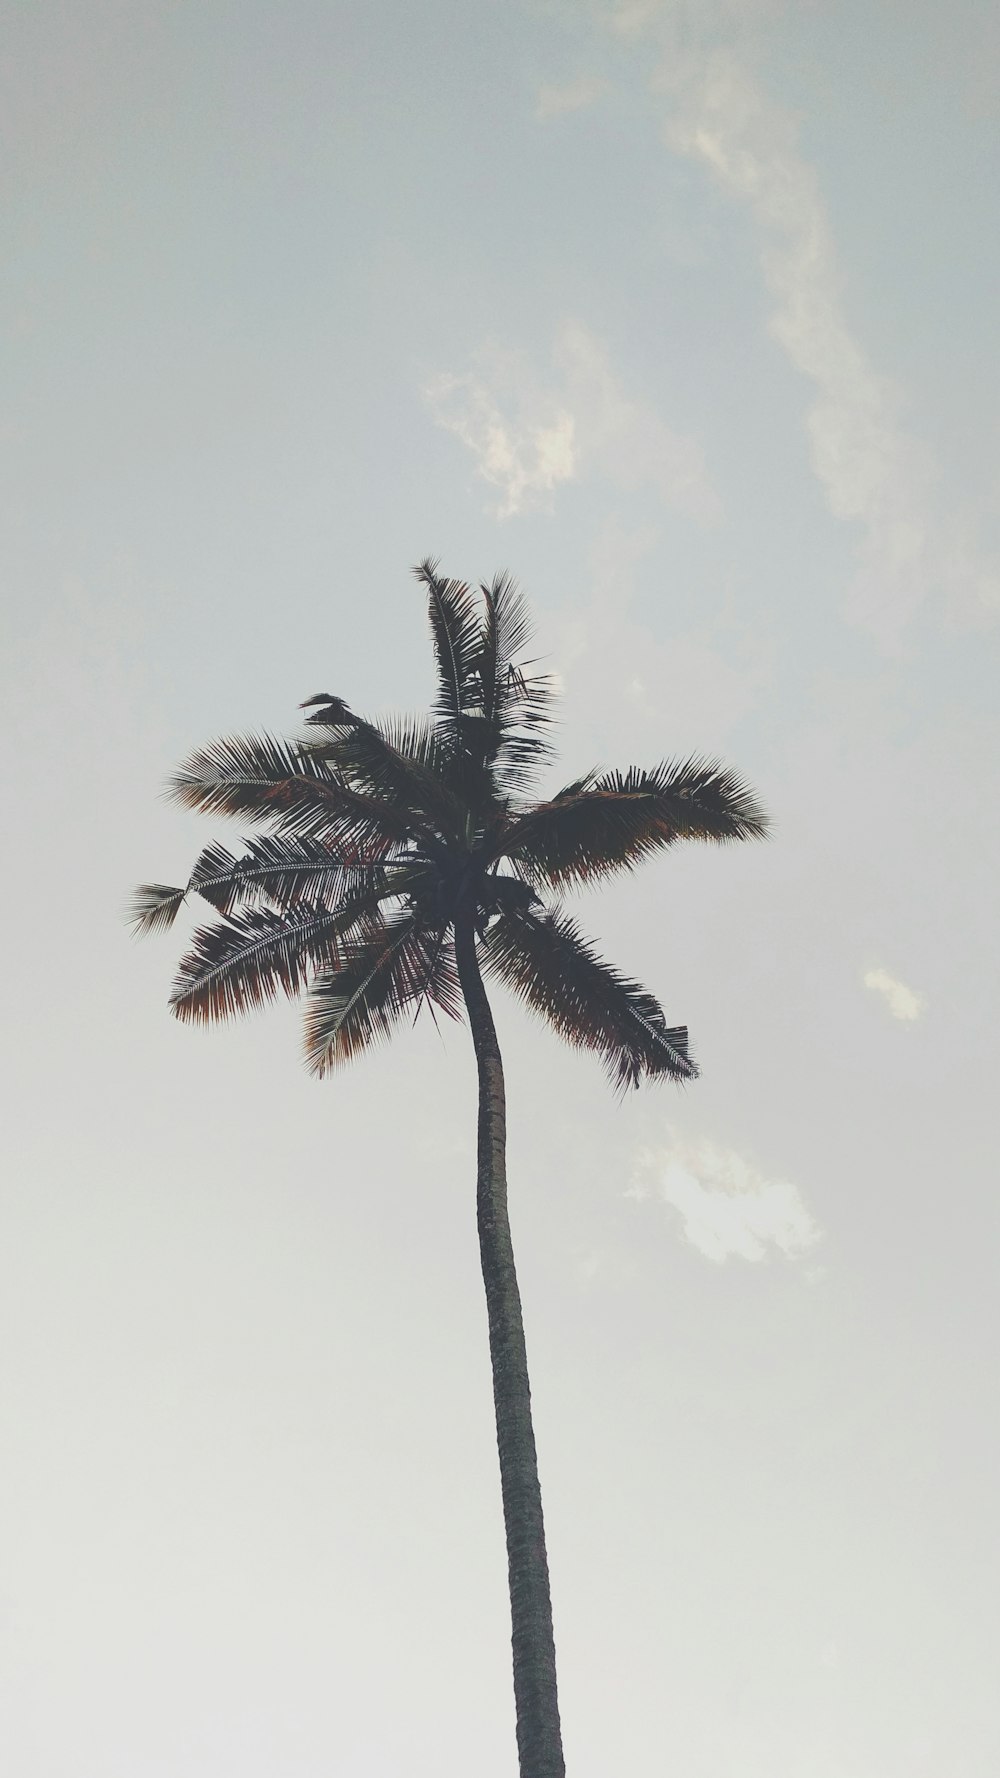 coconut tree under gray sky